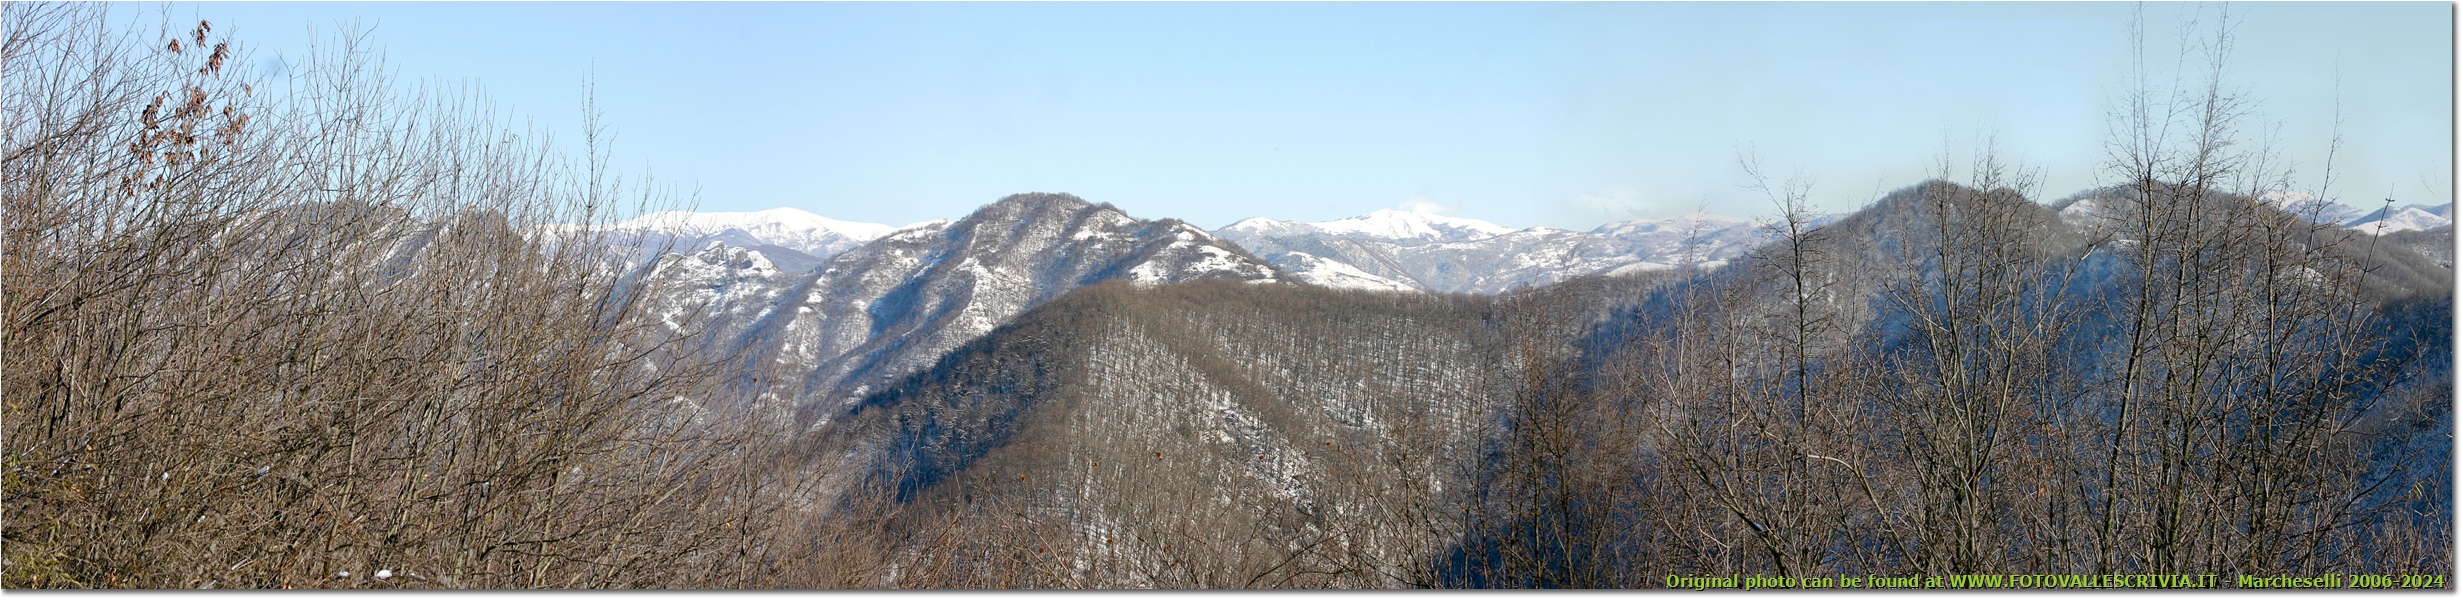 Al di là del Monte Pianetto di Savignone: boschi con neve nel Parco dell’Antola; sullo sfondo Catena dei Monti Liguri - Savignone - 2006 - Panorami - Inverno - Canon EOS 300D